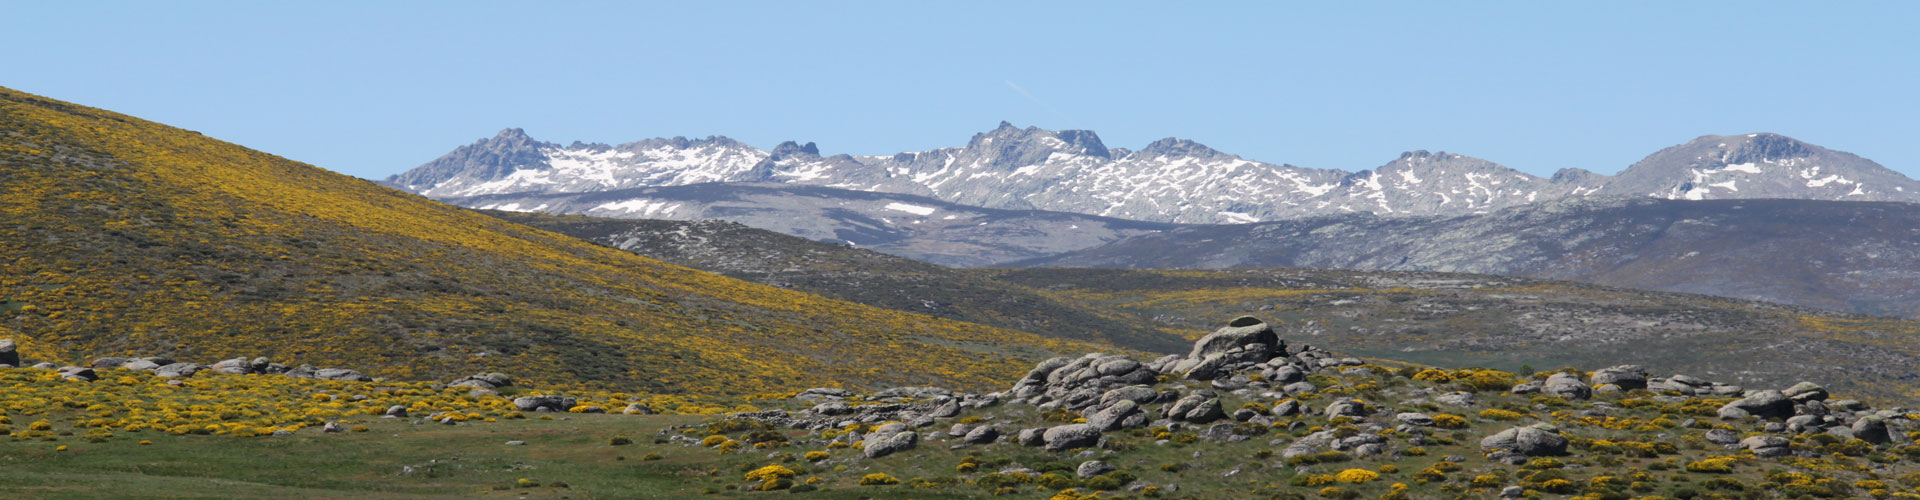 gredos ibex mountain